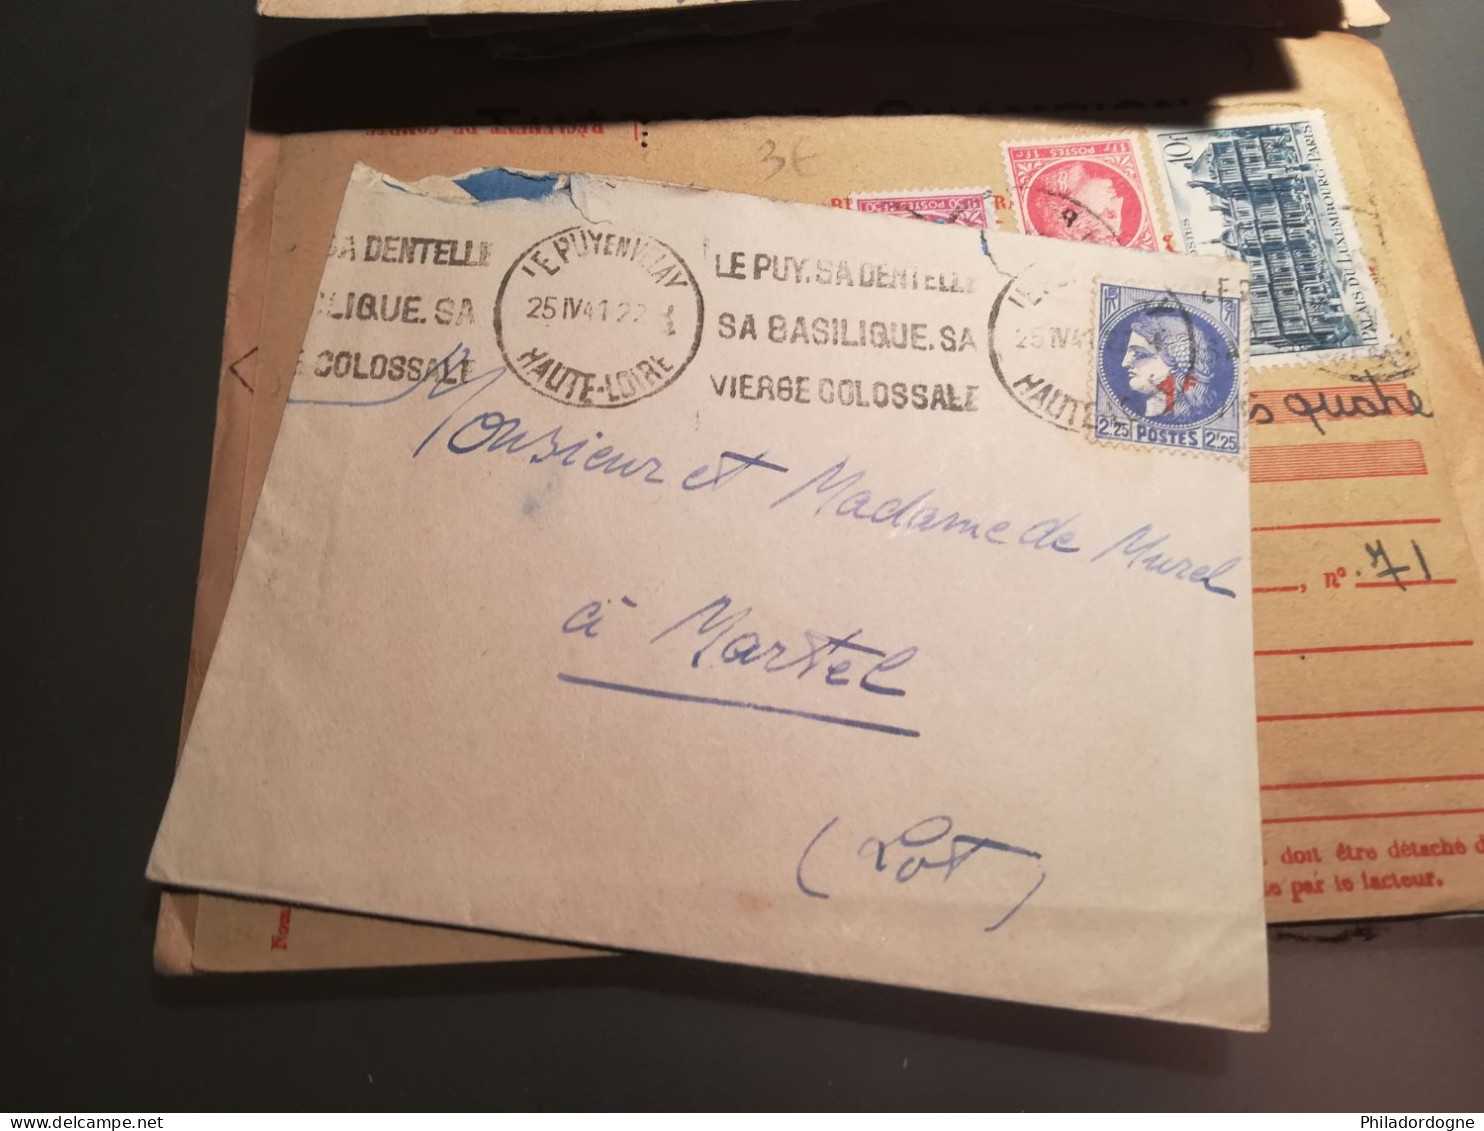 France - Lot de + de 60 documents au type Céres de Mazelin - années 40/60 - lot à trier